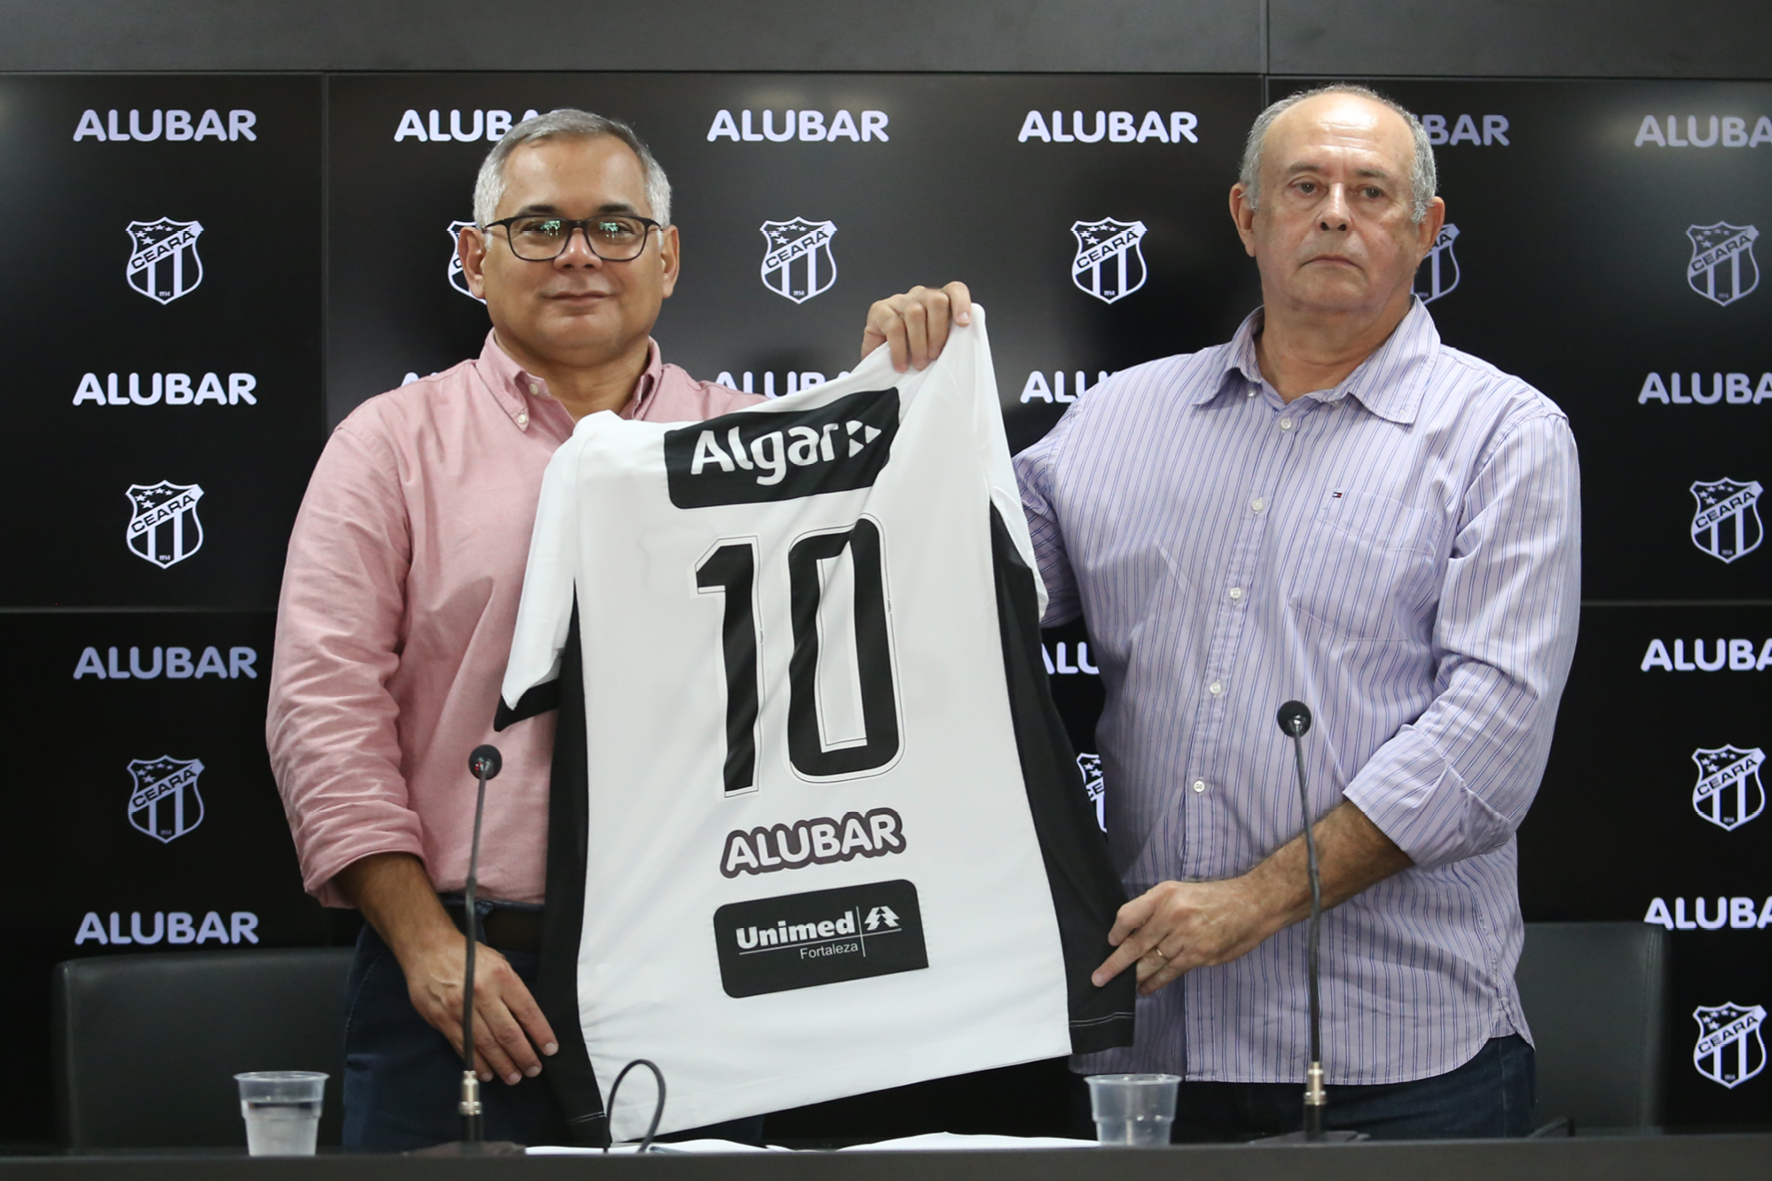 Patrocínio novo: Alubar é a nova parceria do Ceará para a temporada 2019